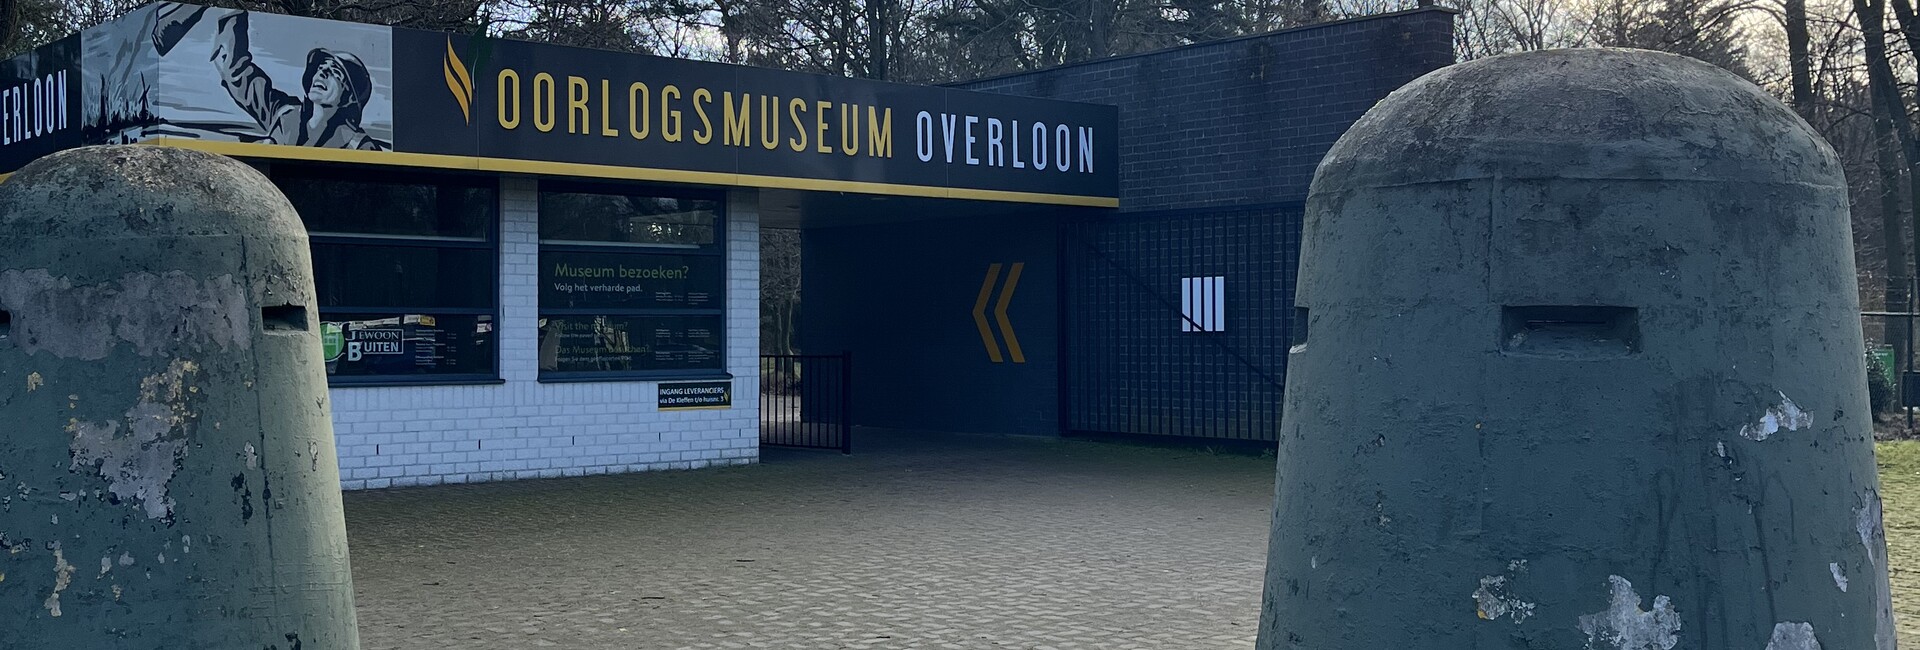 oorlogsmuseum - Opening times